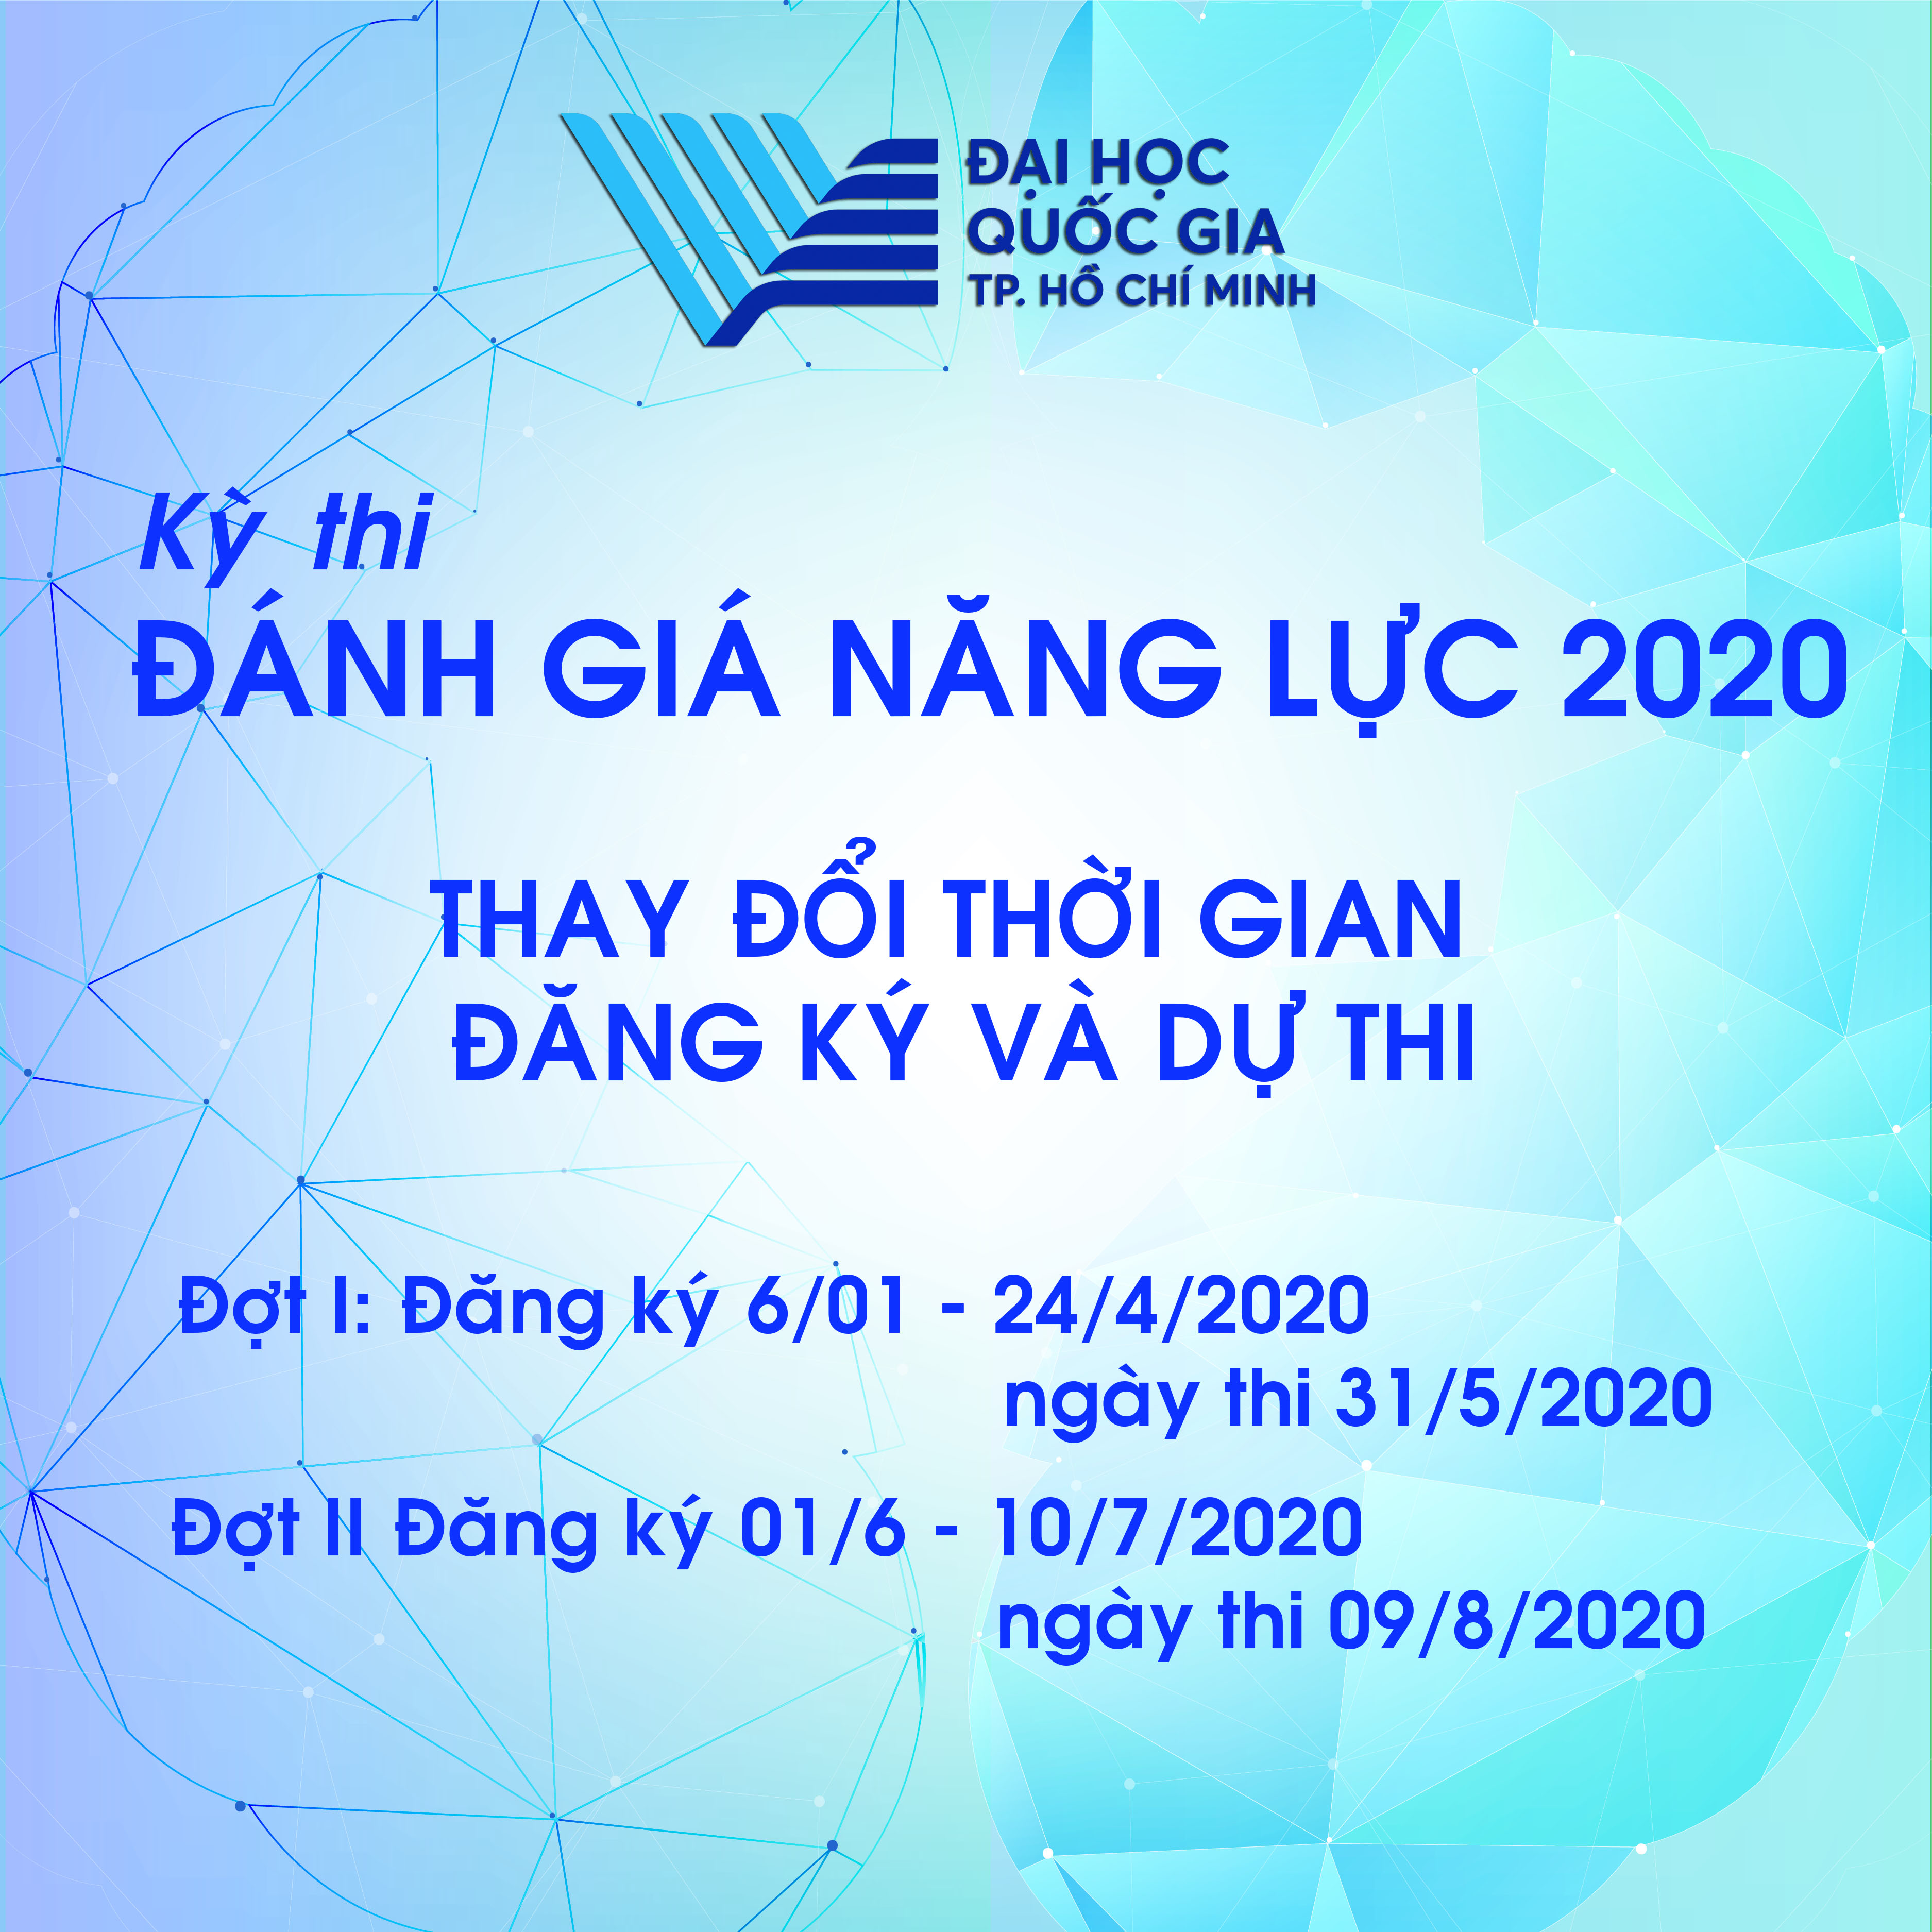 ĐHQG TP.HCM thông báo thay đổi thời gian đăng ký và dự thi ĐÁNH GIA NĂNG LỰC 2020